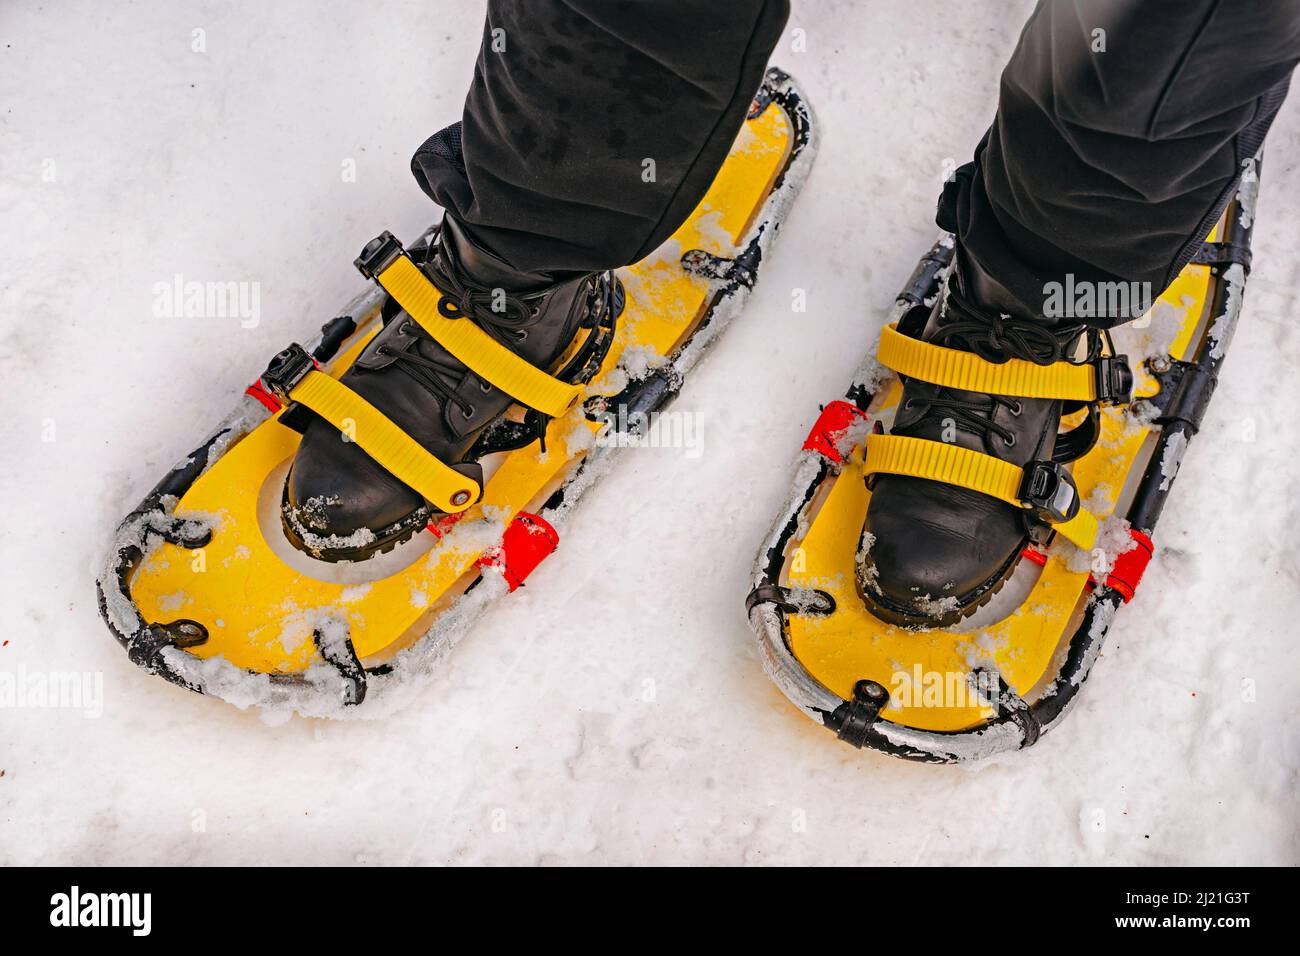 Raquetas de nieve amarillas en botas negras. Raquetas de nieve gente en el bosque de invierno en la nieve. Primer plano de piernas y raquetas nieve Fotografía de stock - Alamy